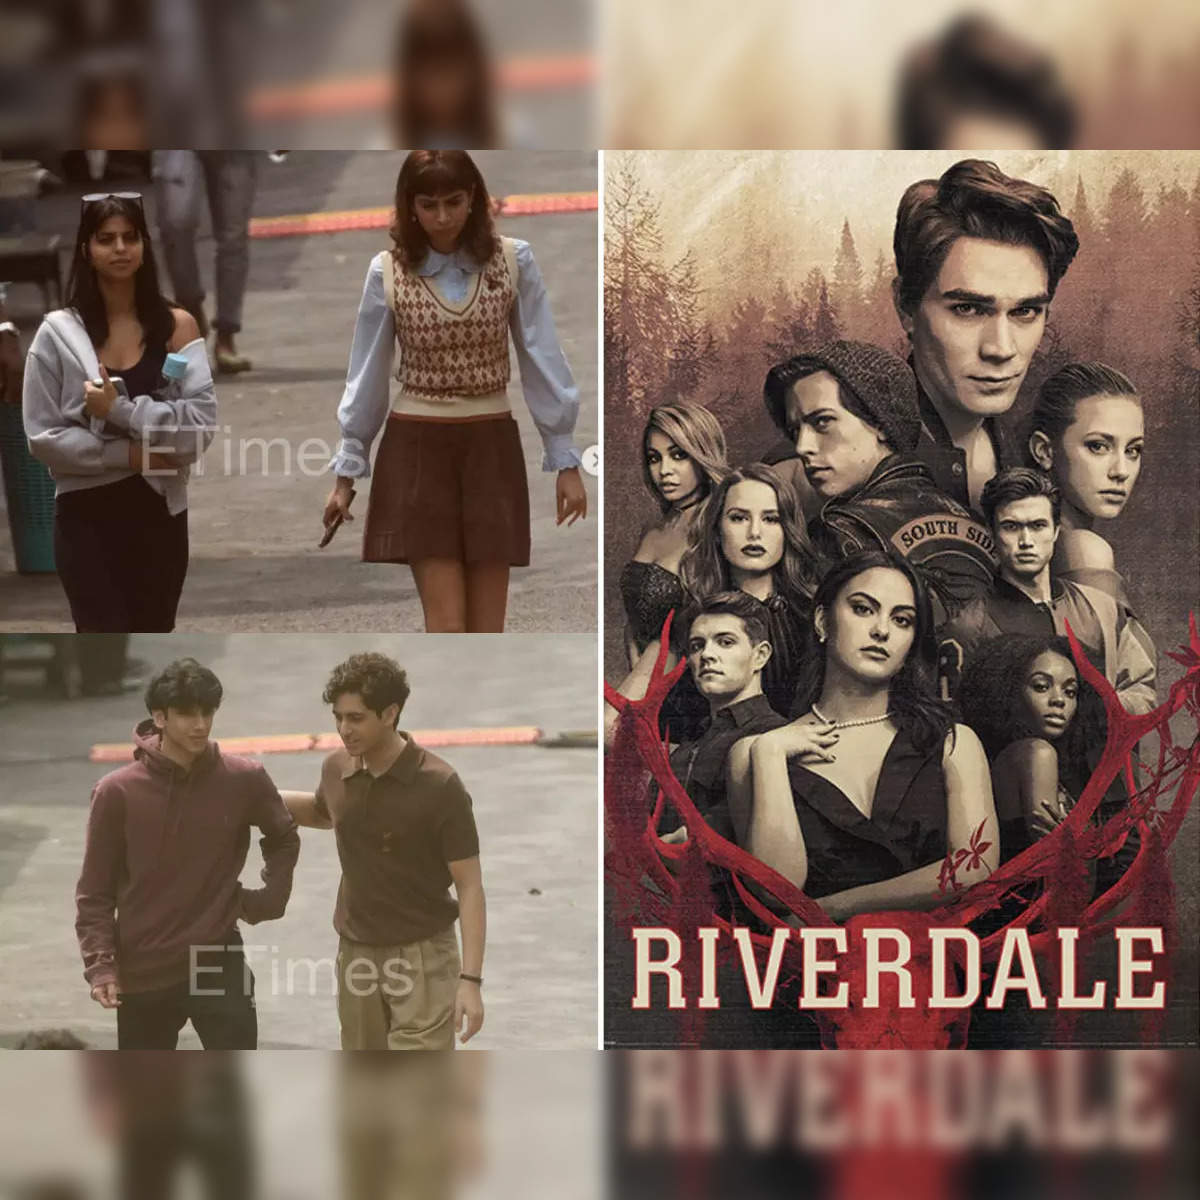 CW Press, The CW, Riverdale, Photos, Riverdale